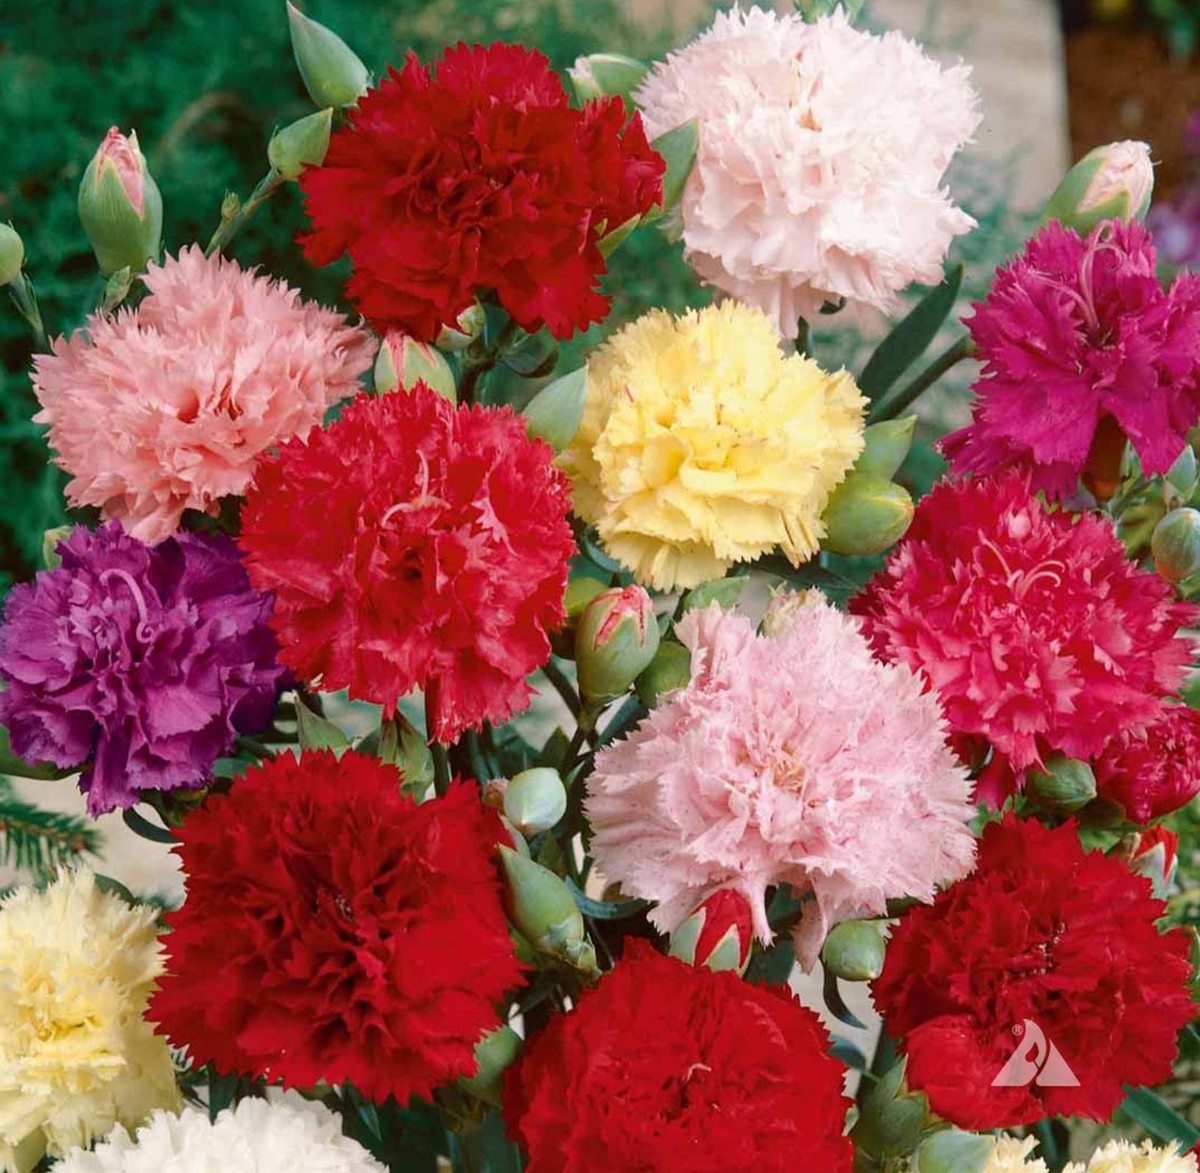 Hoa cẩm chướng được biết đến như một loài hoa của mẹ bởi vì nó thể hiện sự kính trọng và biết ơn